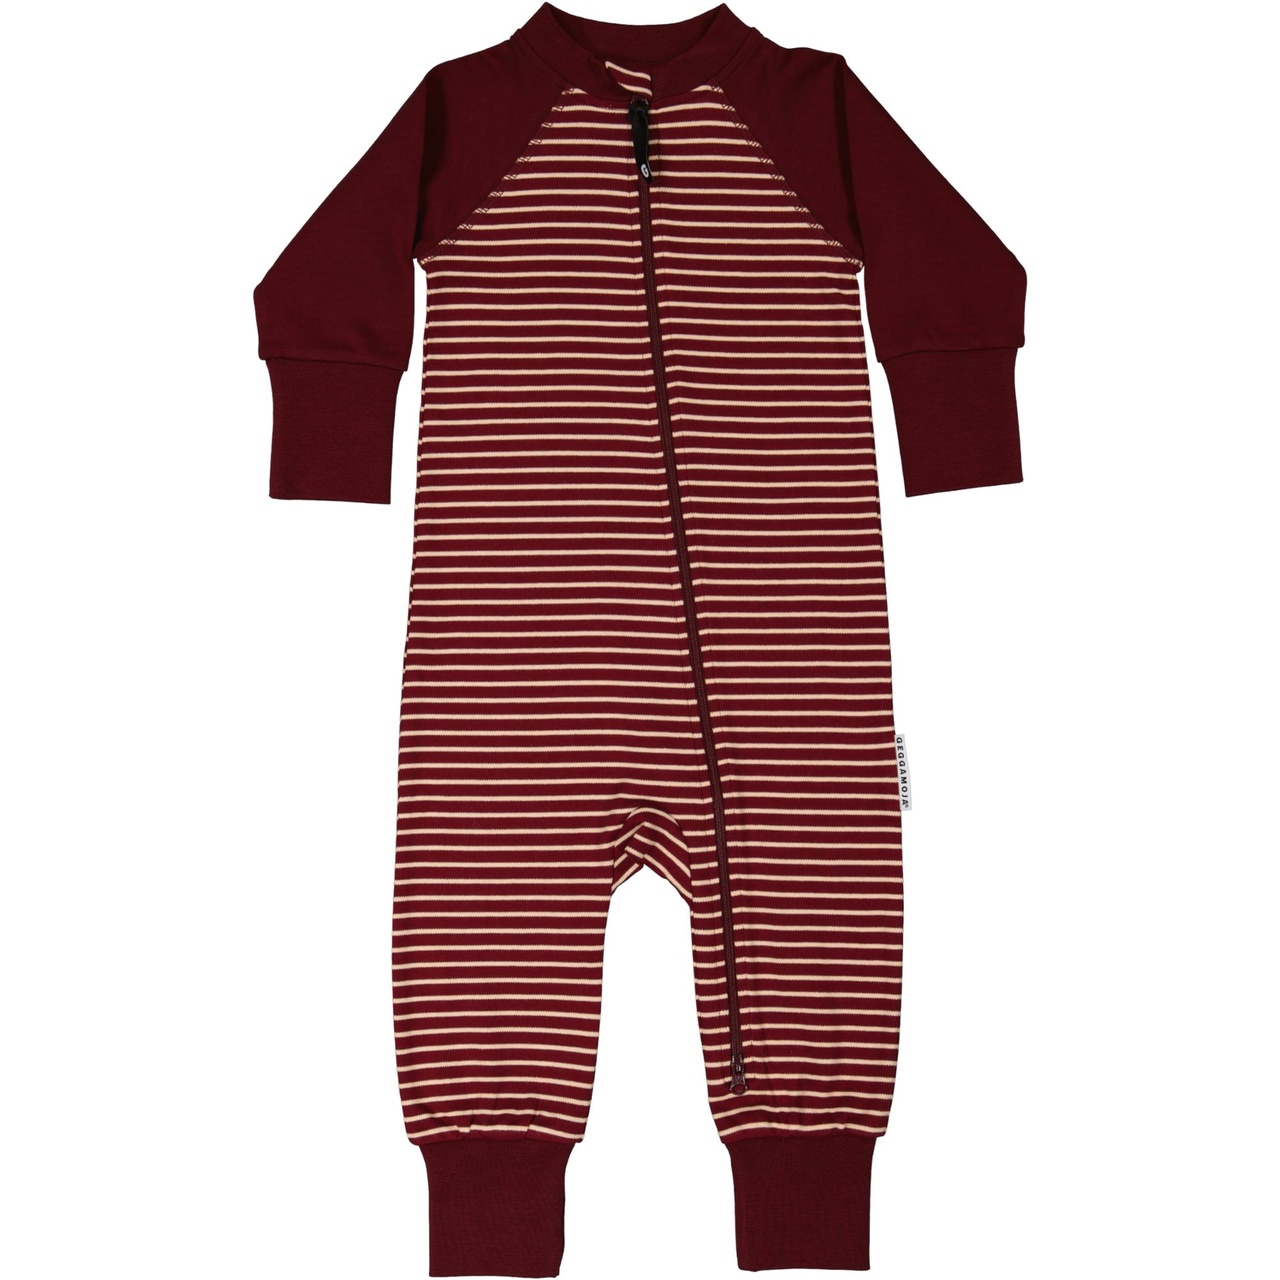 Pyjamas Two way zipper Burgundy/peach 110/116